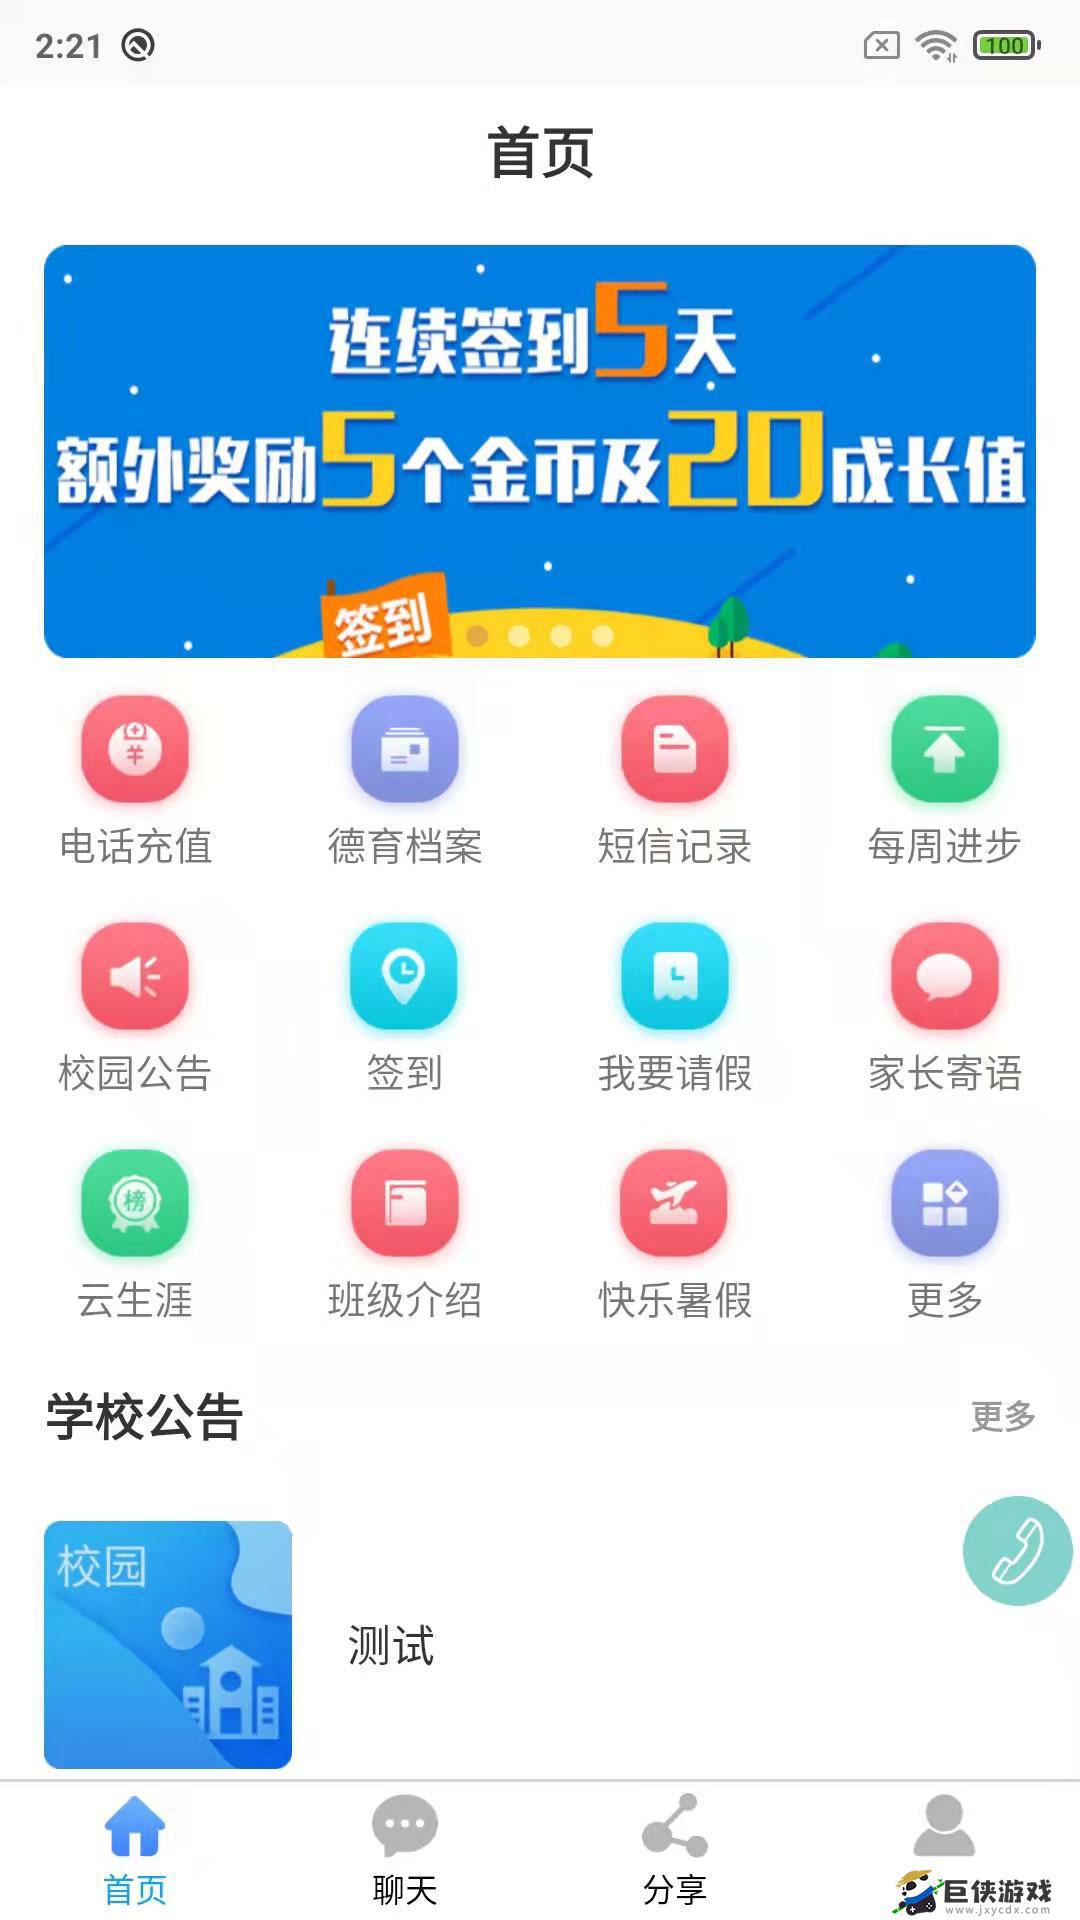 鑫考云校园app版下载